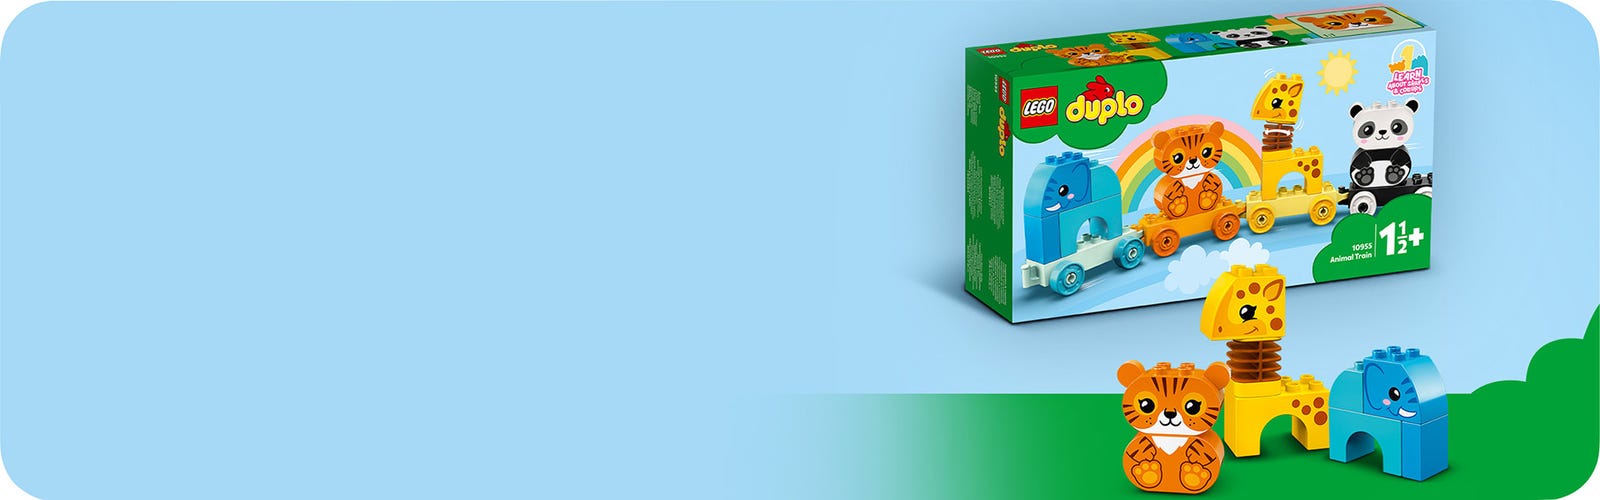 LEGO DUPLO My First 10955 Animal Train - LEGO Set